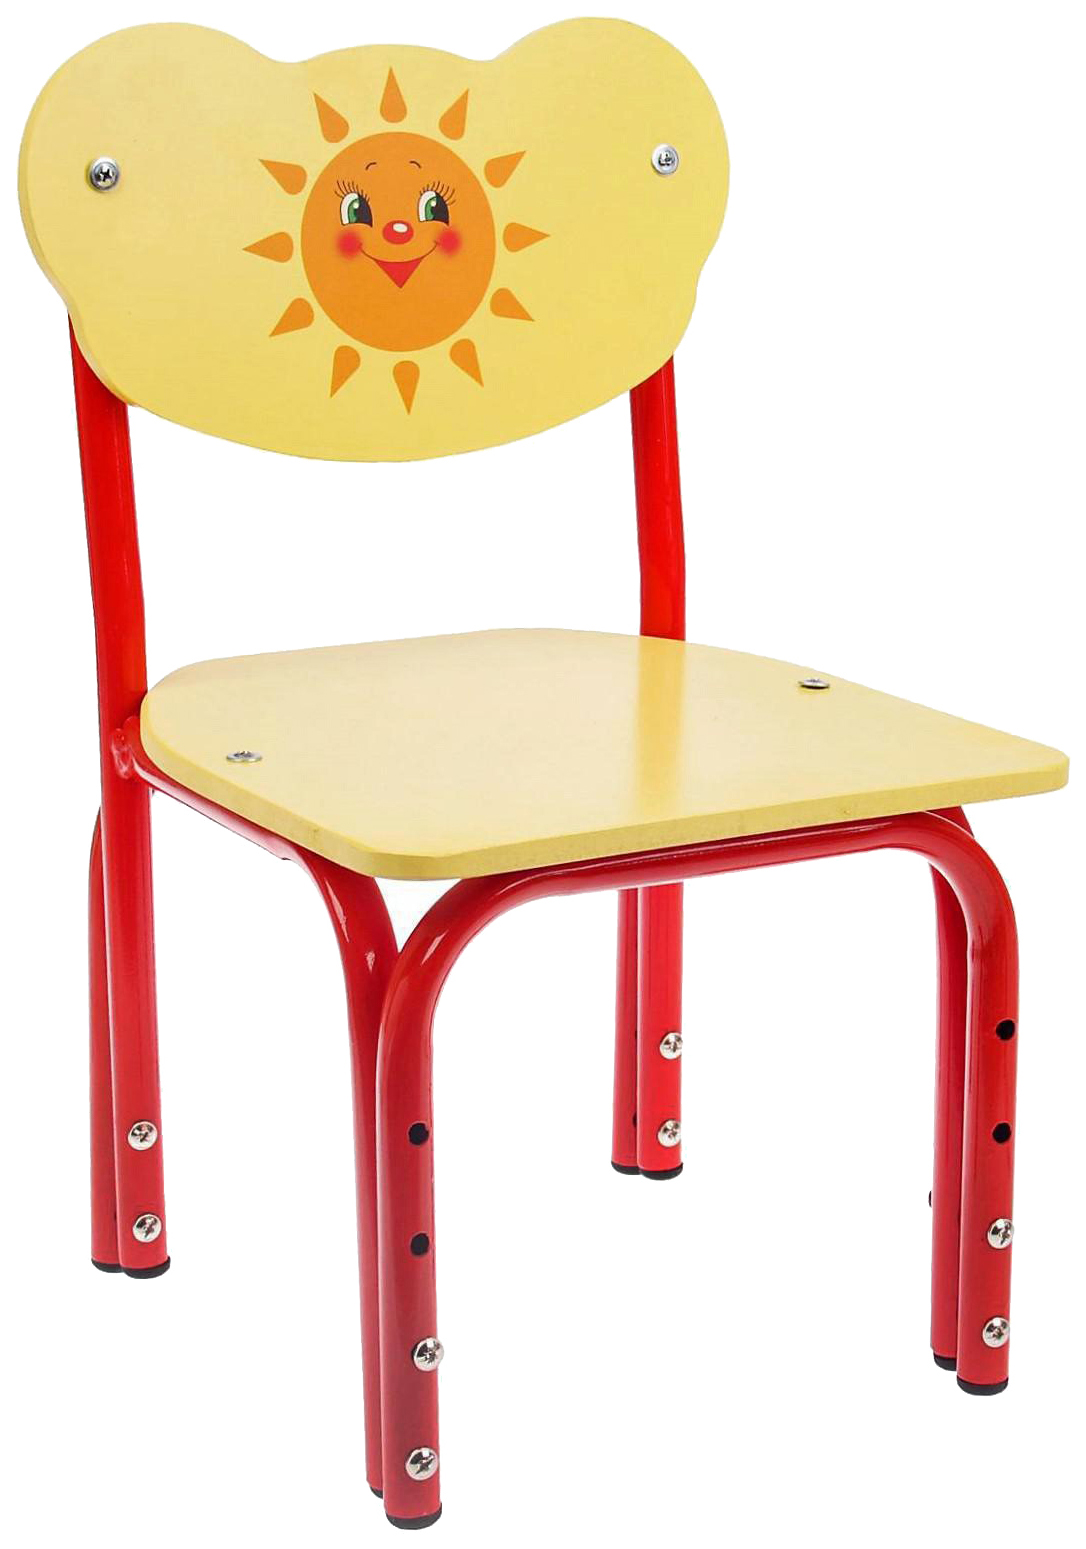 Детский стул Кузя. Солнышко, регулируемый, разборный стул регулируемый 1 3 кузя